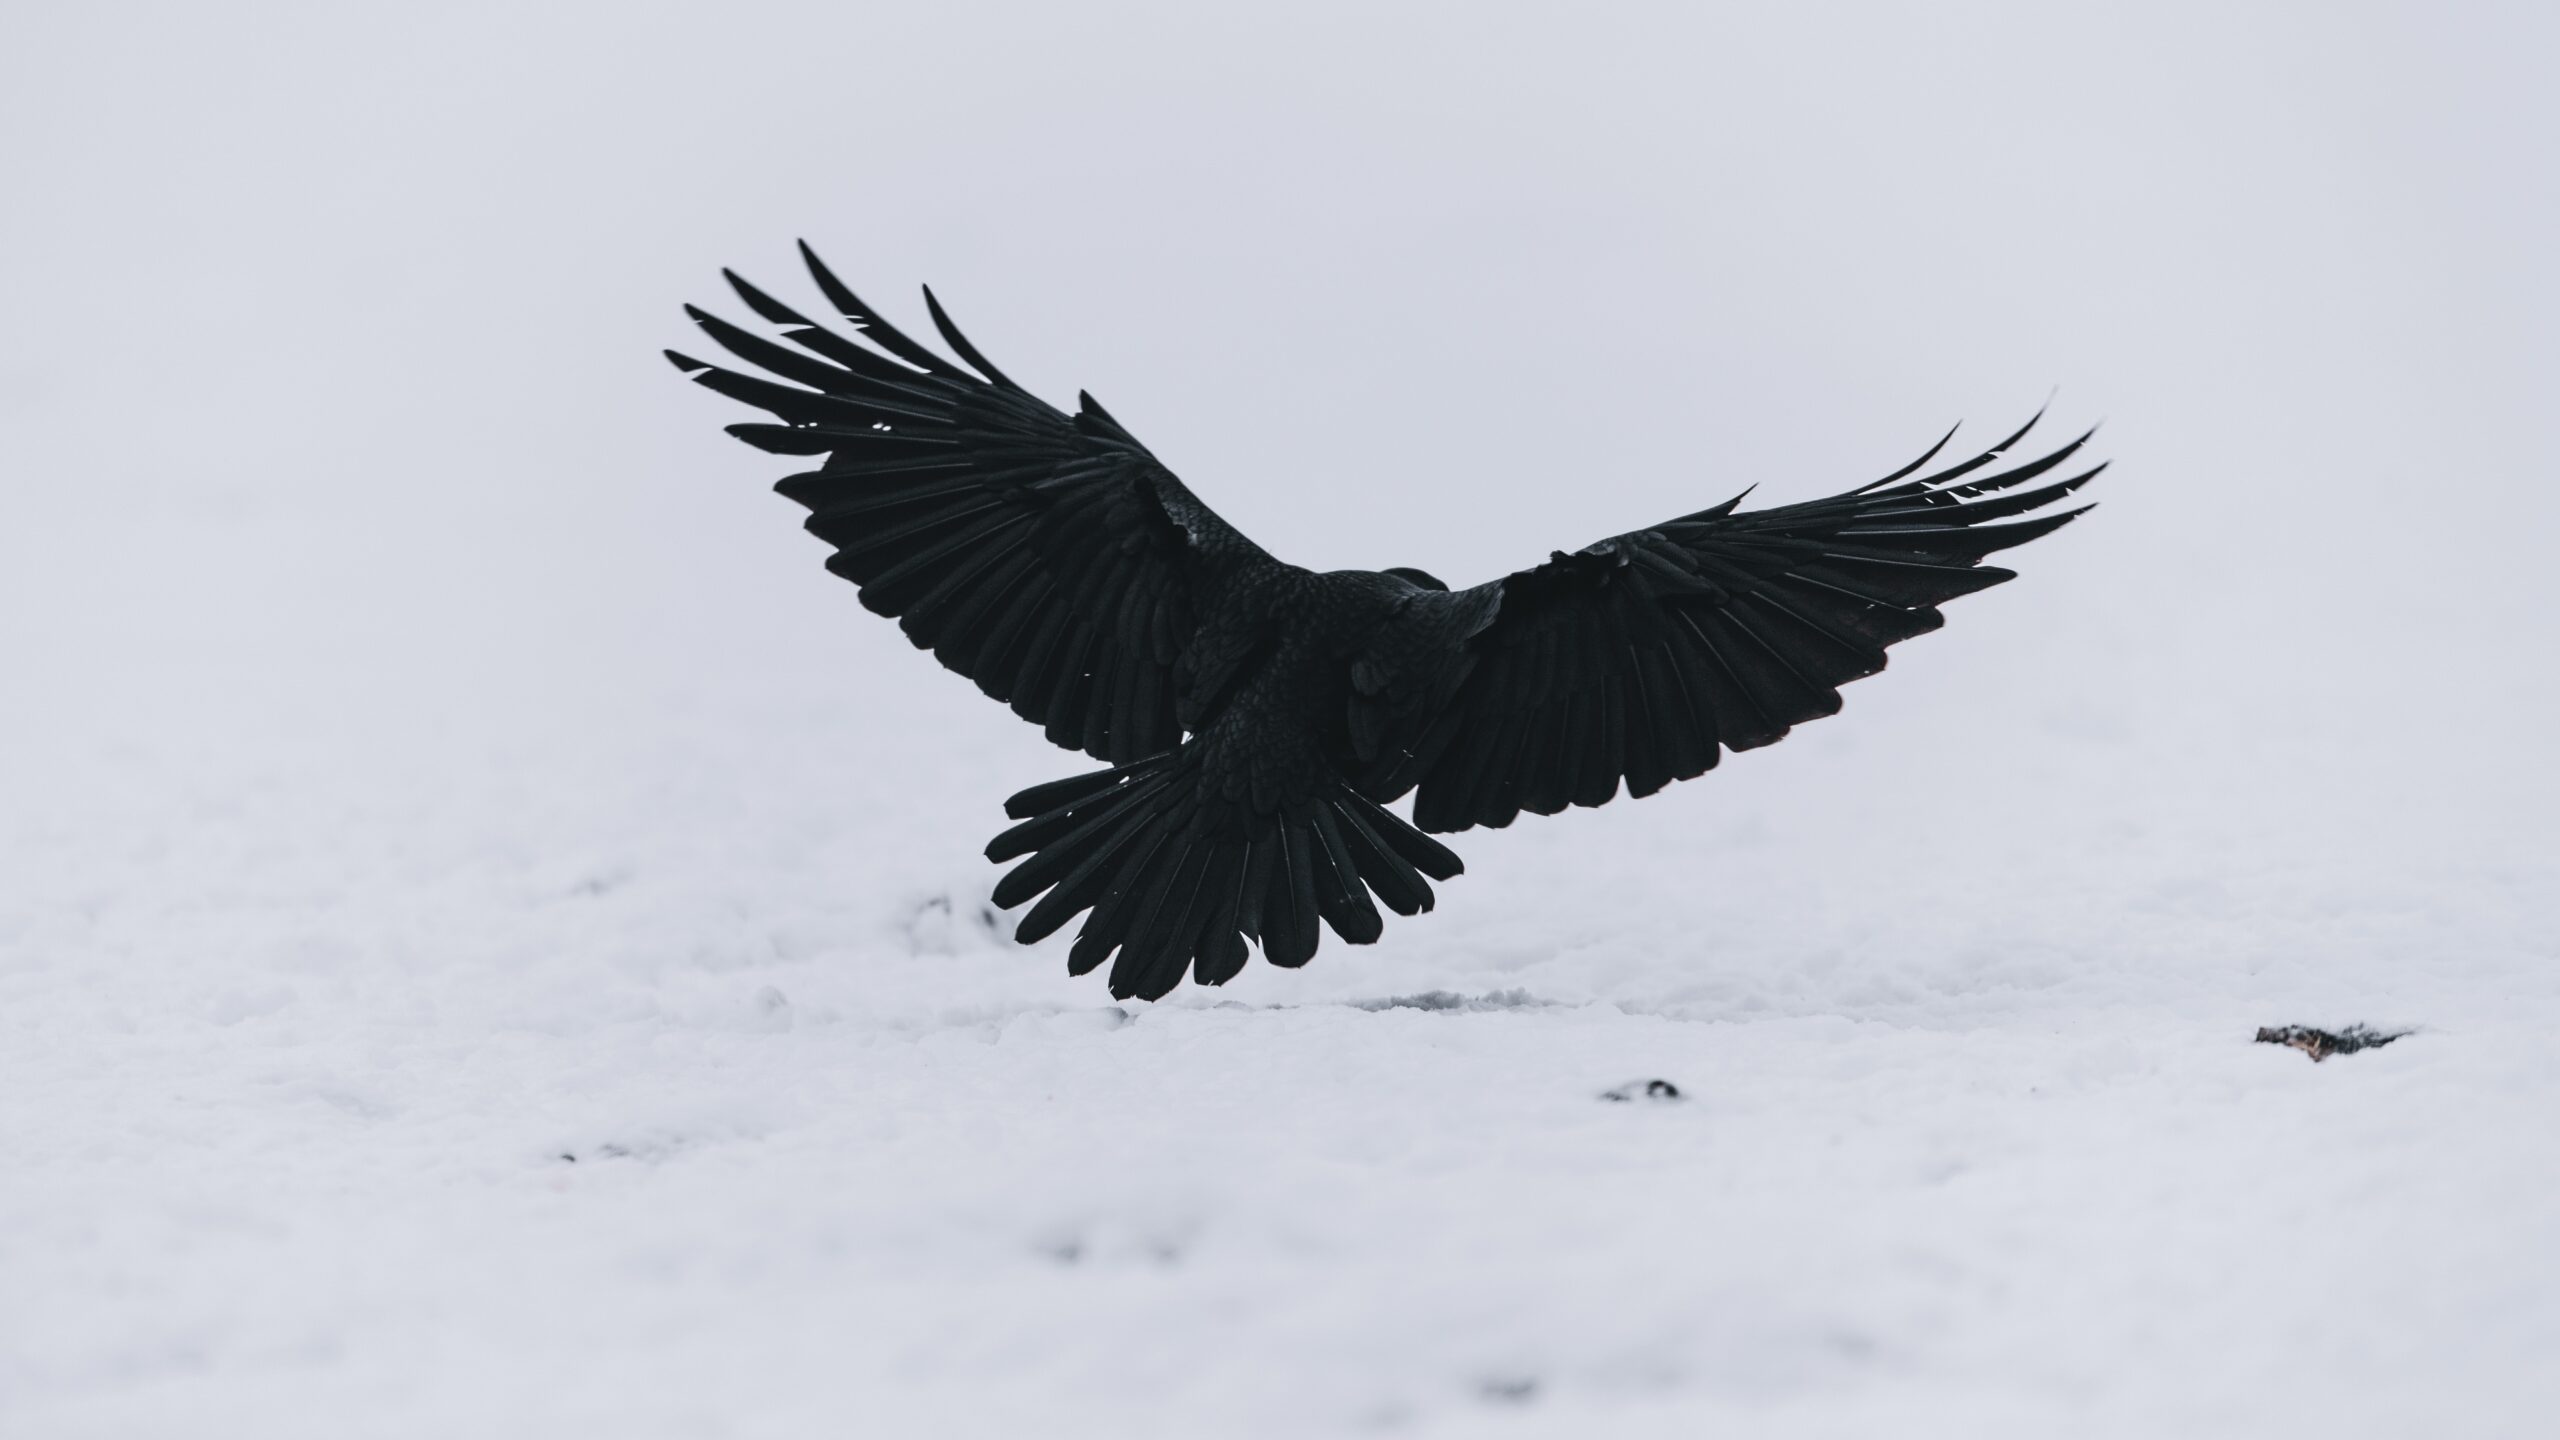 Blackbird (Toma esas alas y aprende de nuevo a volar)